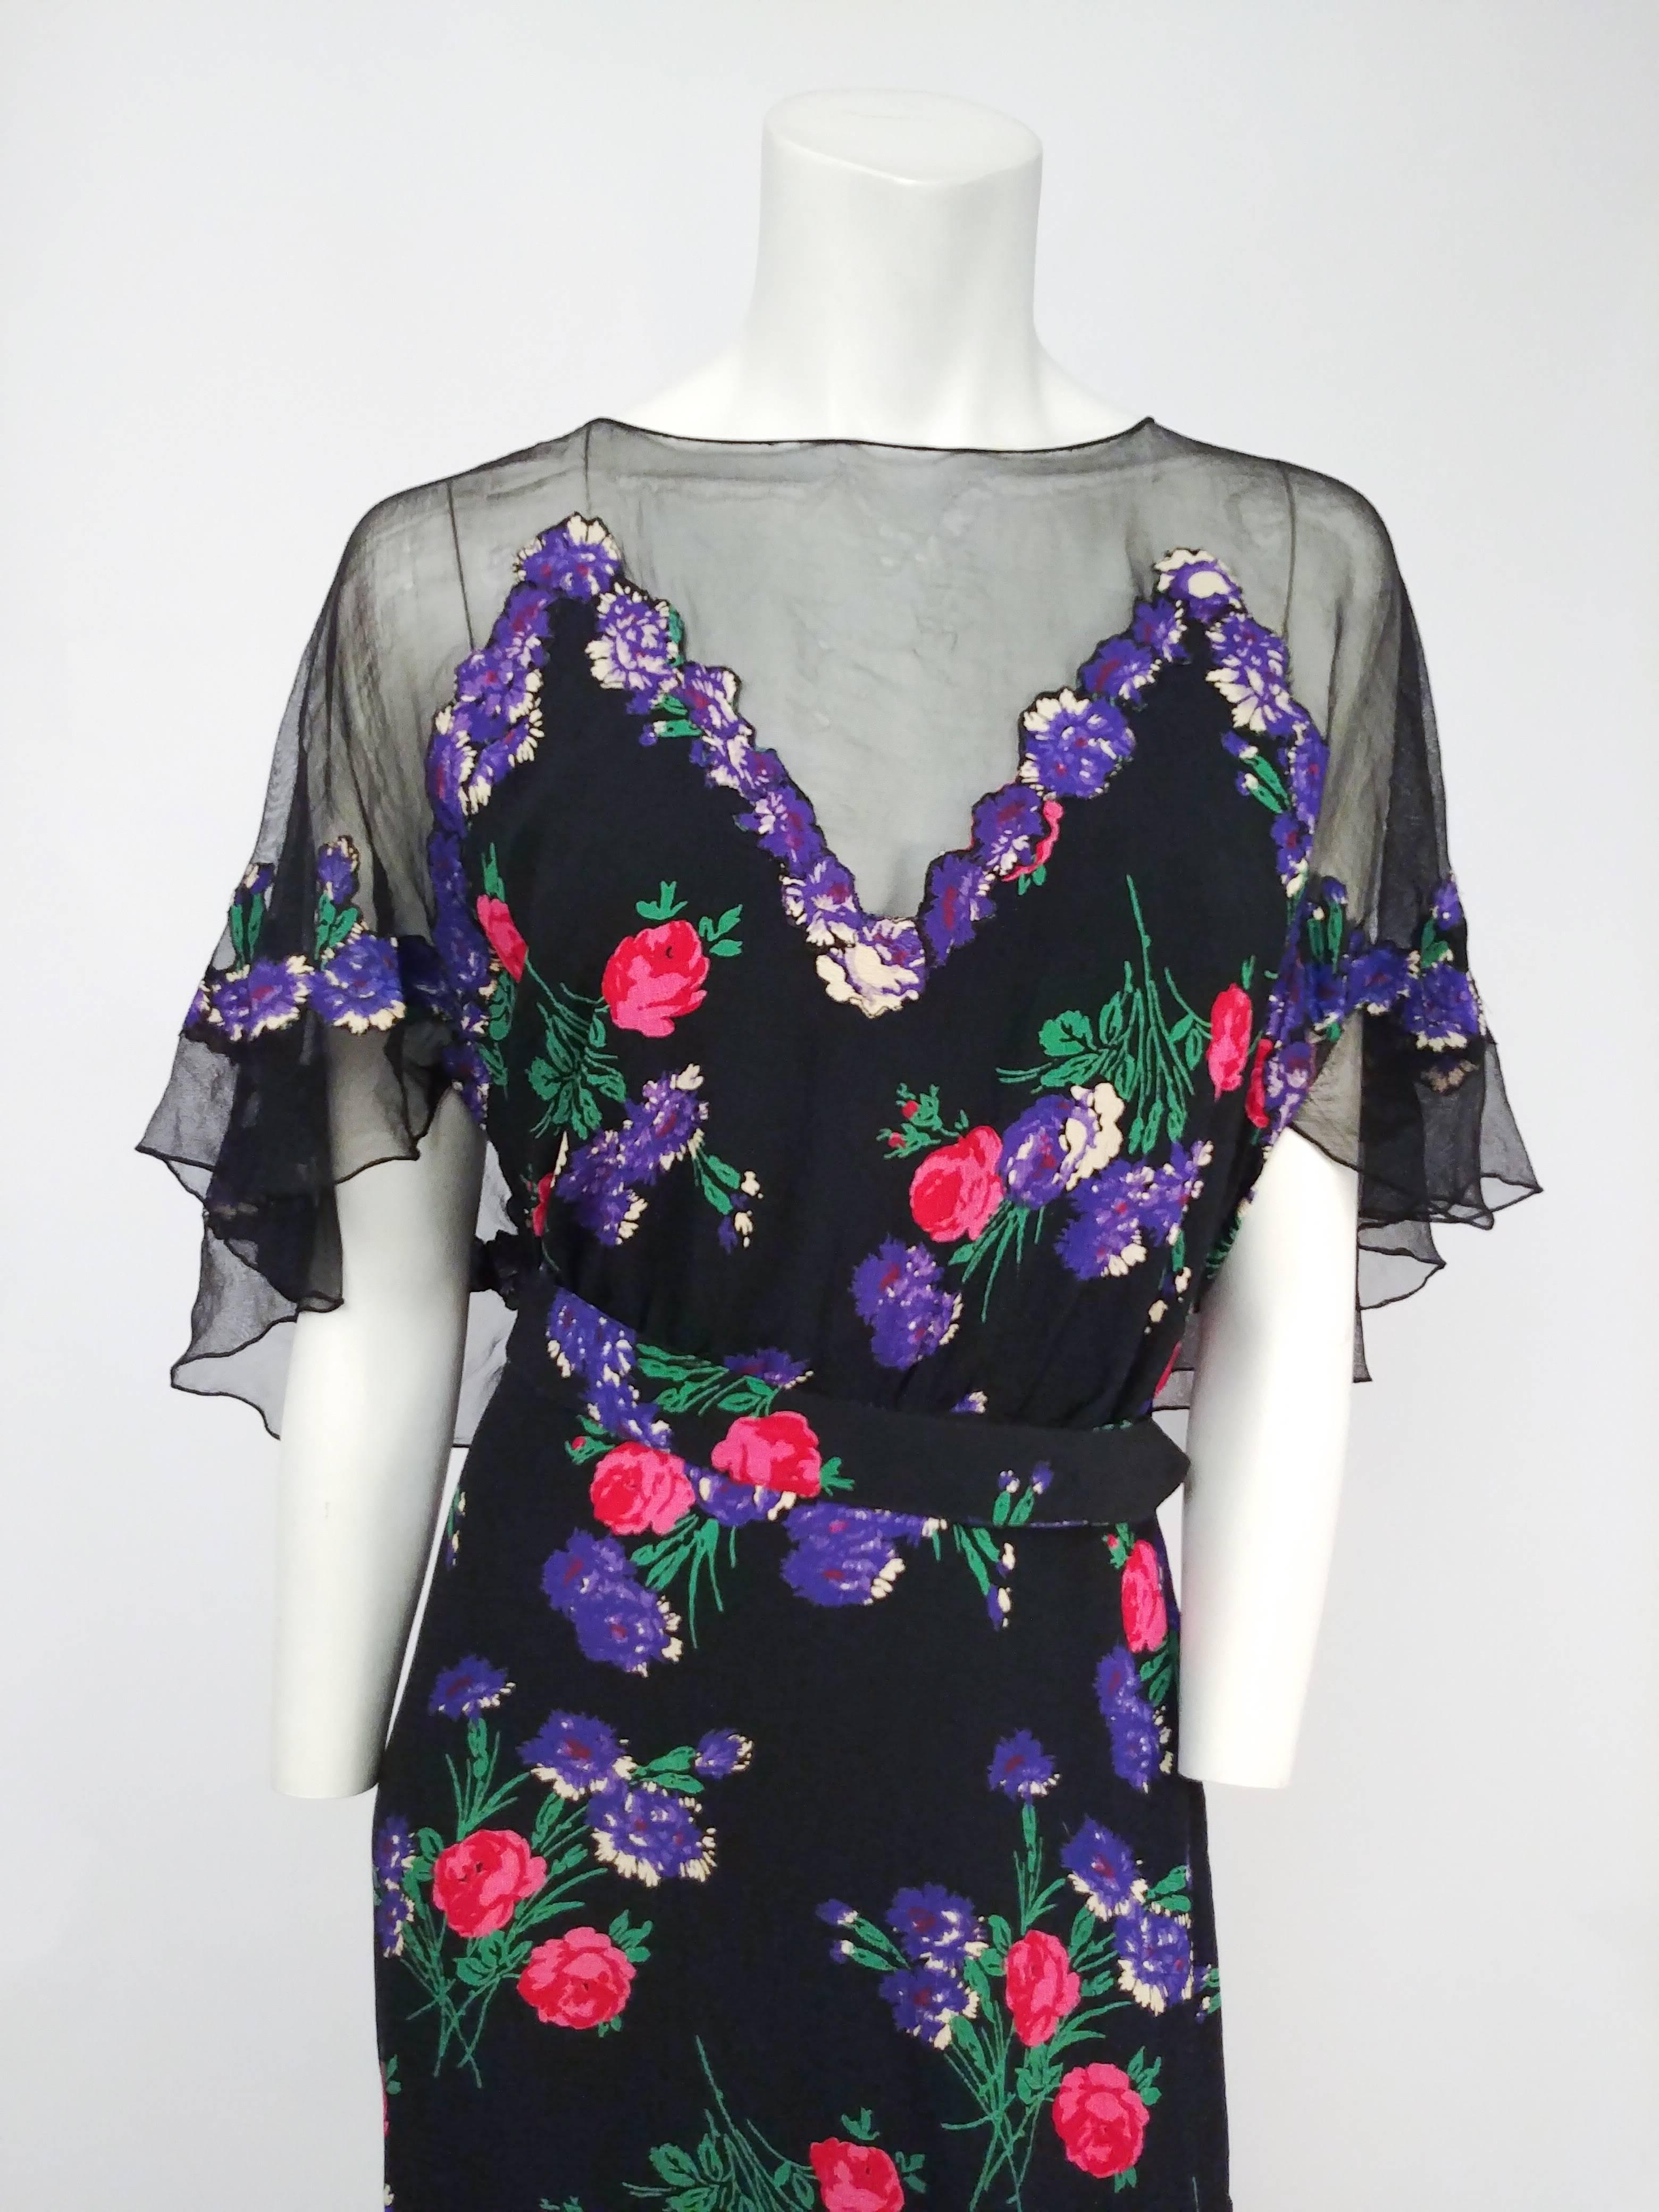 robe en maille noire imprimée de fleurs des années 1930. Robe en maille transparente avec application de fleurs découpées, caplet intégré au dos. Ceinture attachée. 